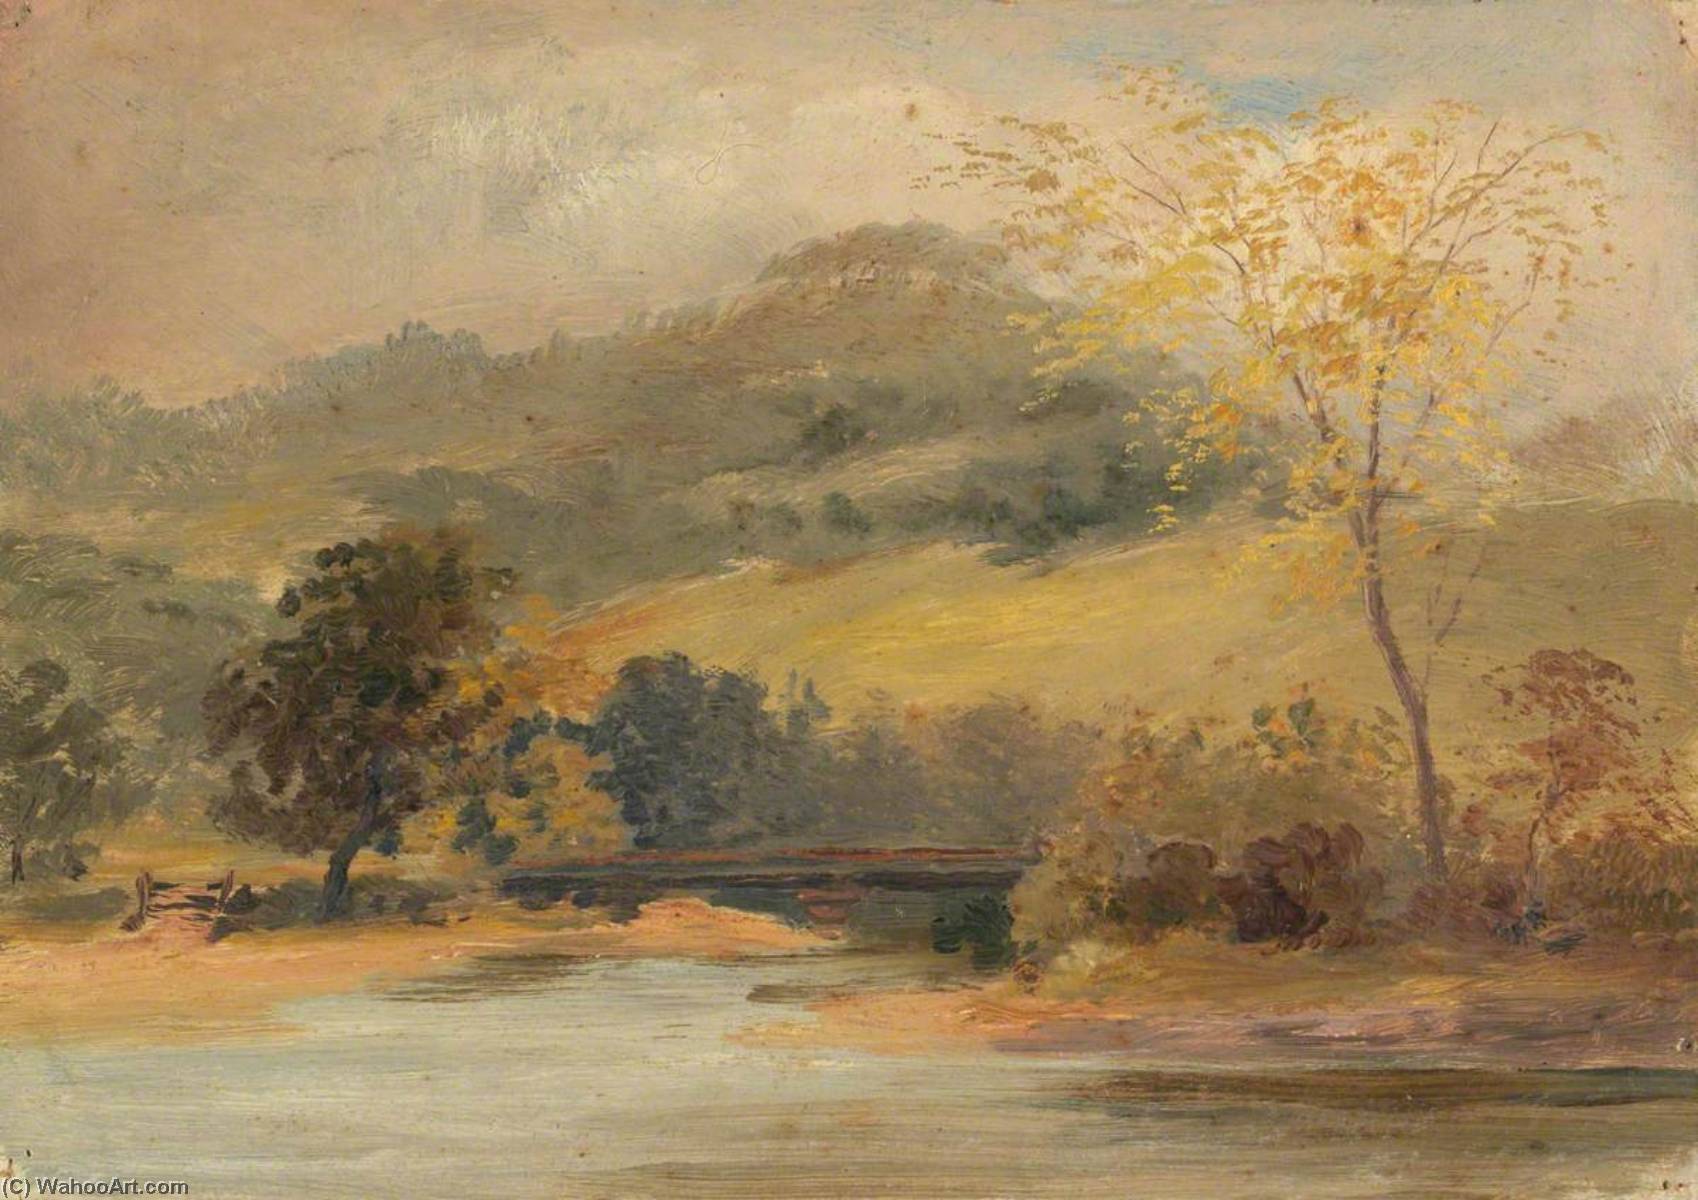 Order Paintings Reproductions Bridge over Water, 1880 by Sarah A Doidge (1830-1900) | ArtsDot.com